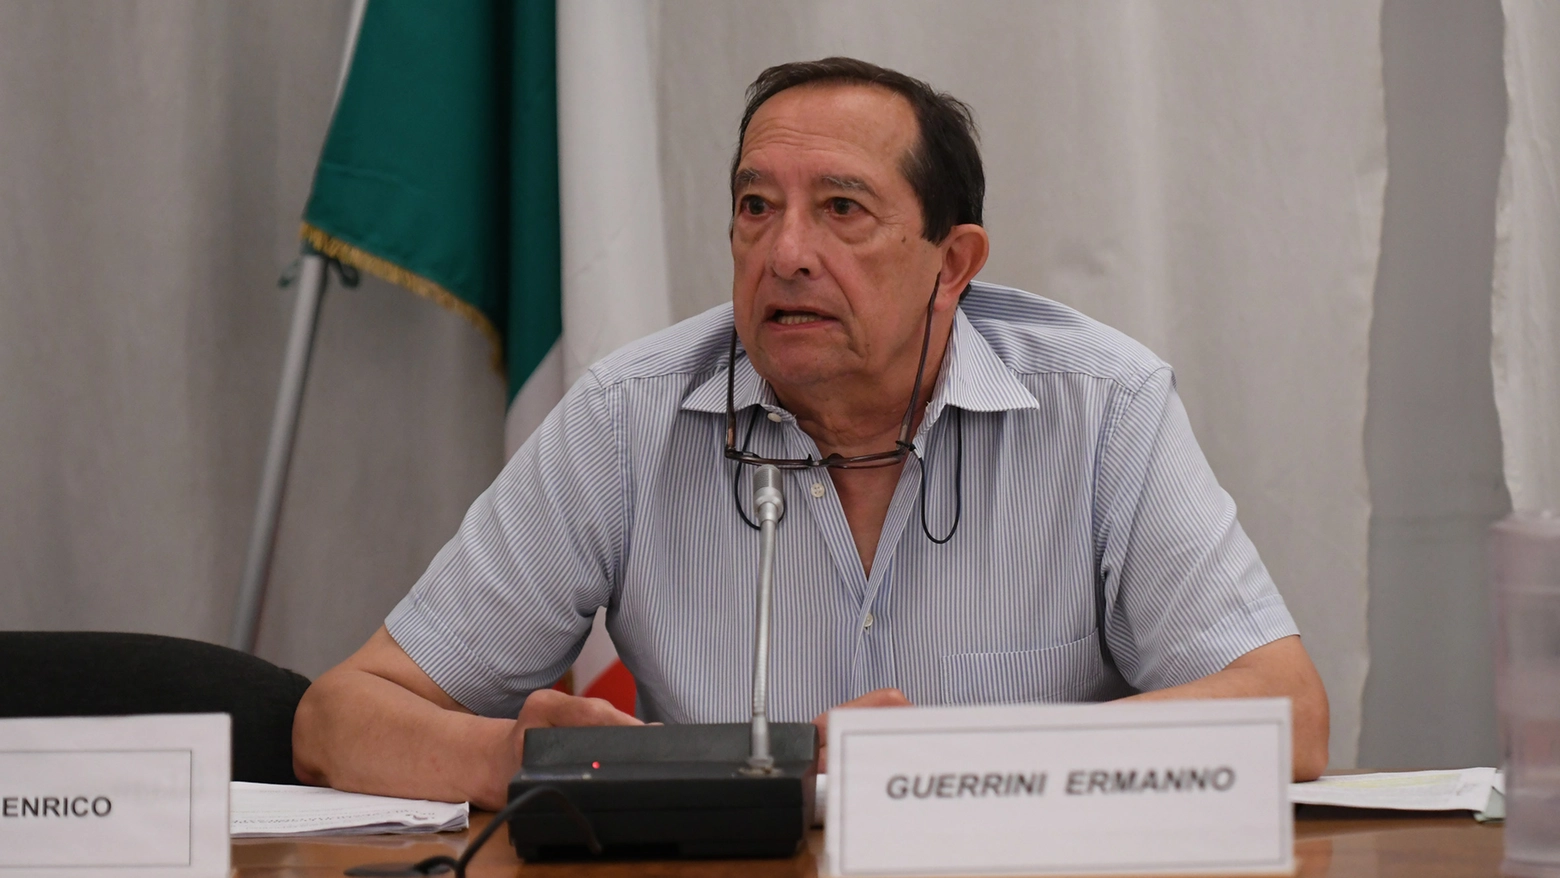 L'assessore Ermanno Guerrini